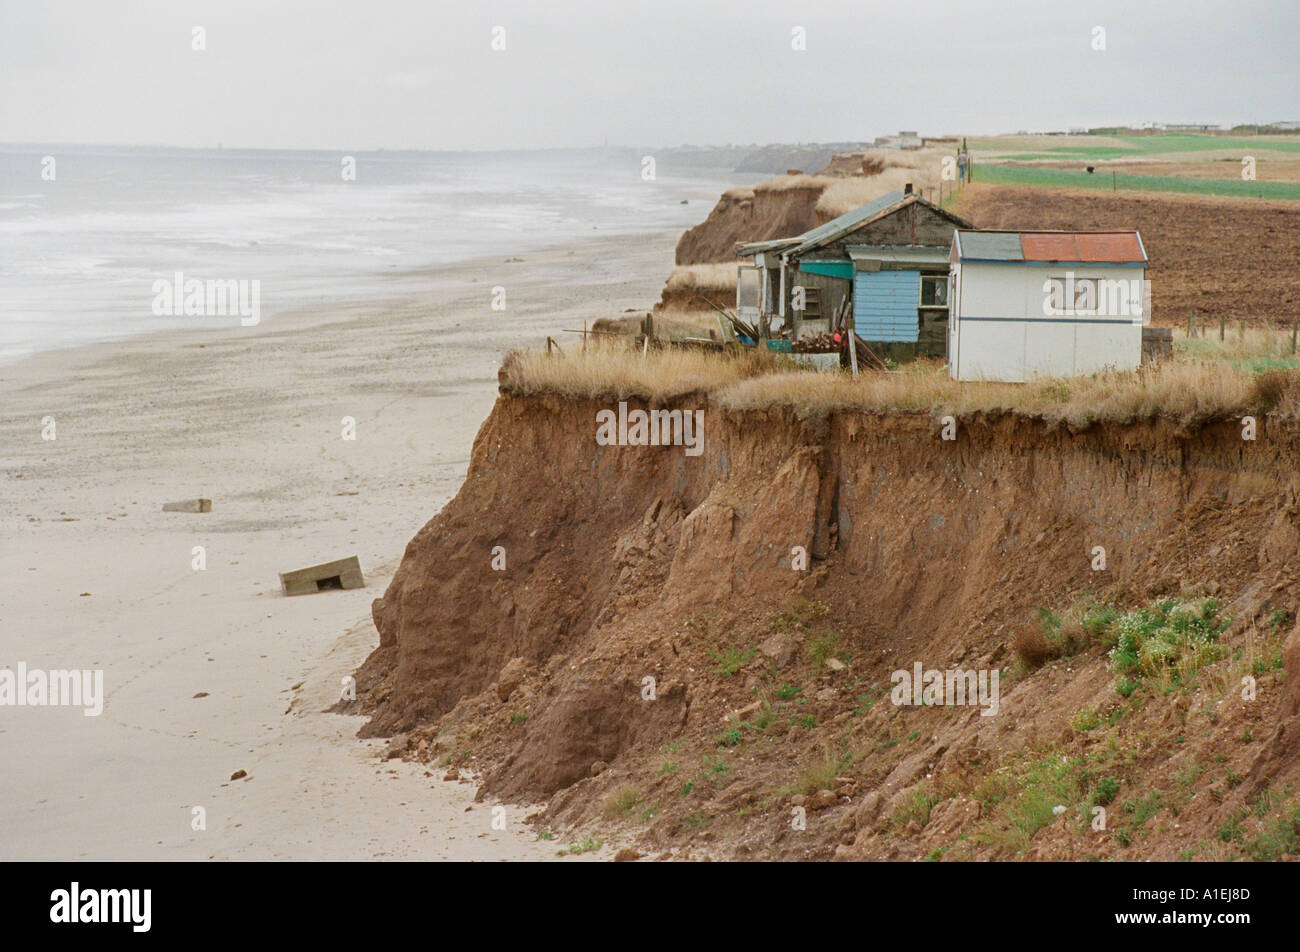 Maisons abandonnées comme le littoral de l'Est de l'Angleterre est progressivement érodée. Ils vont bientôt tomber dans la mer. Banque D'Images